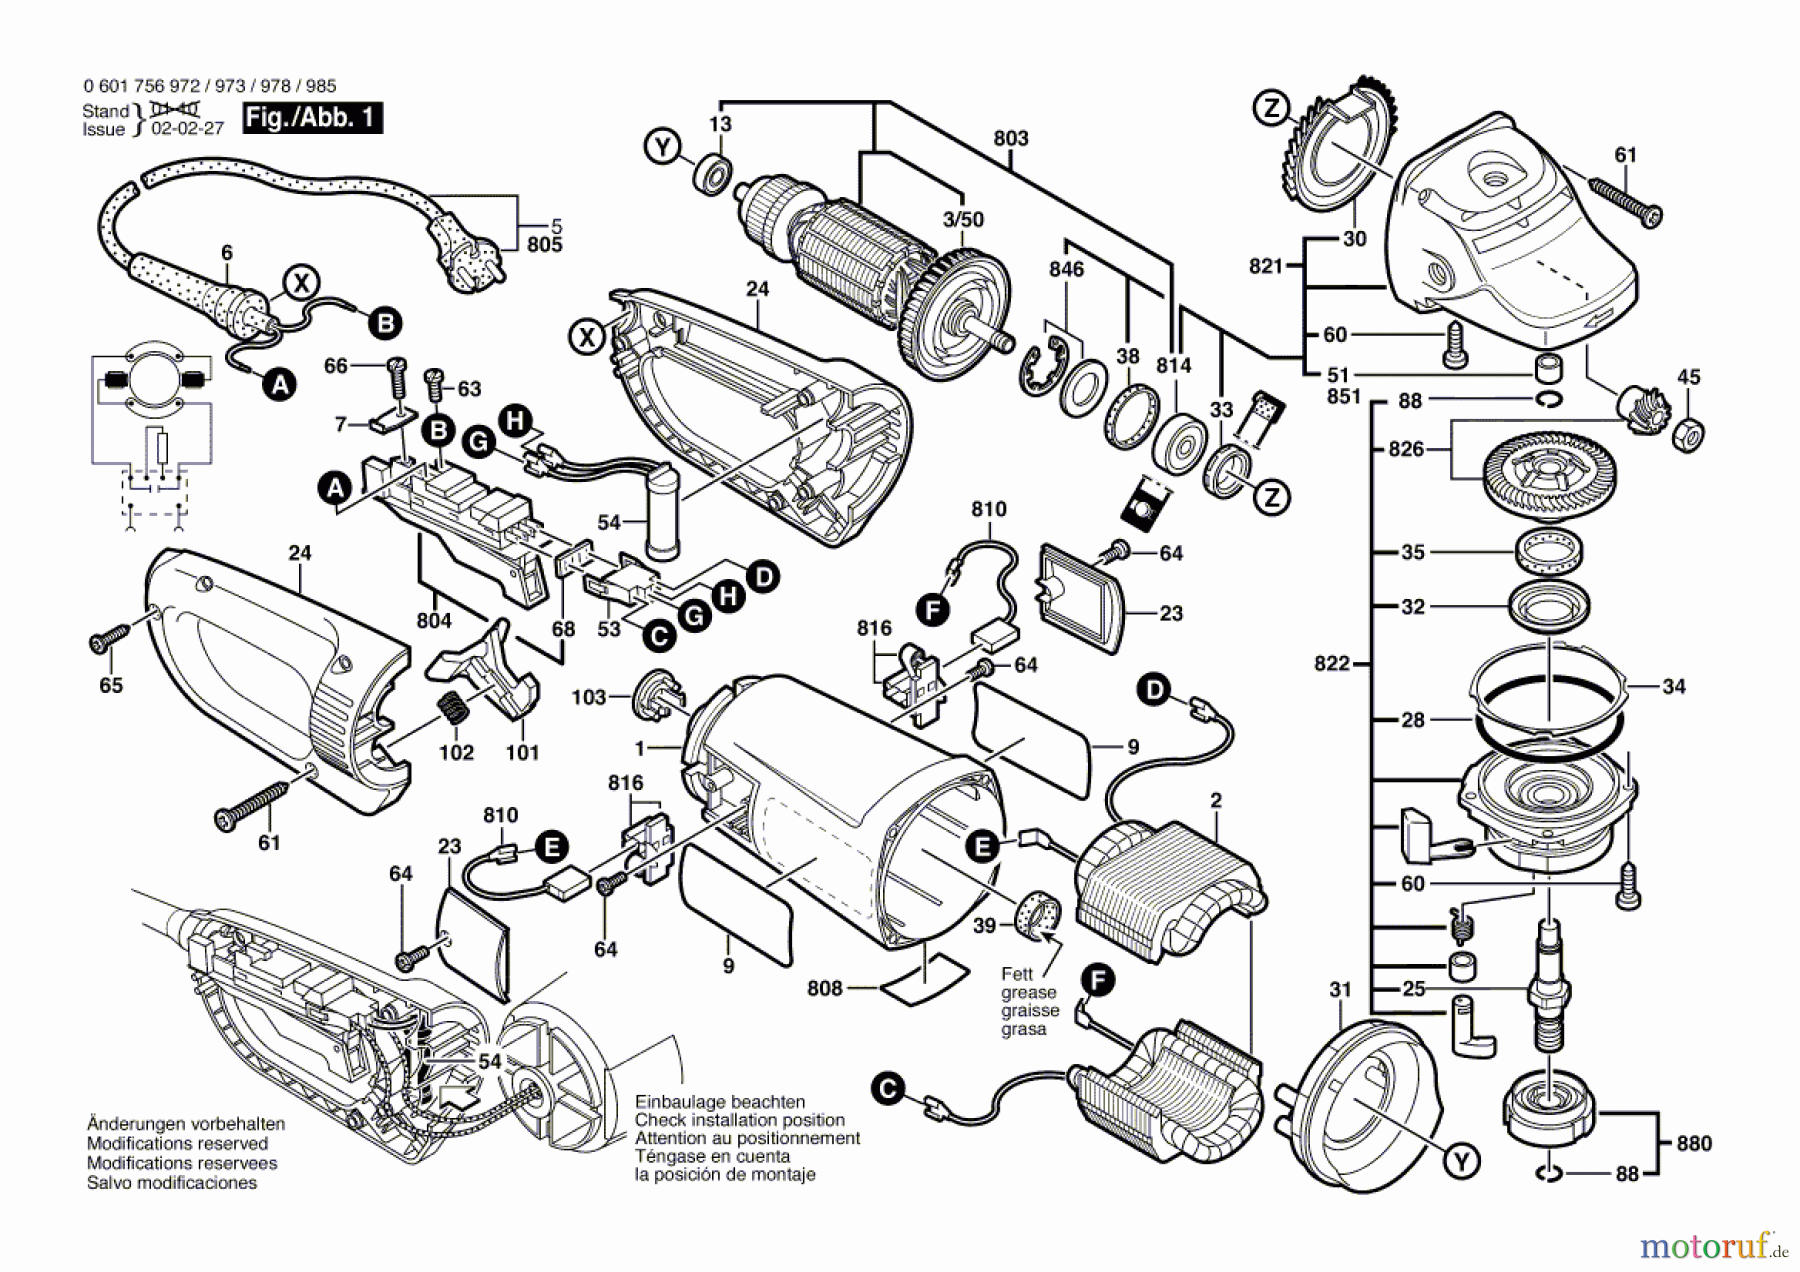  Bosch Werkzeug Winkelschleifer GWS 25-230 JS Seite 1